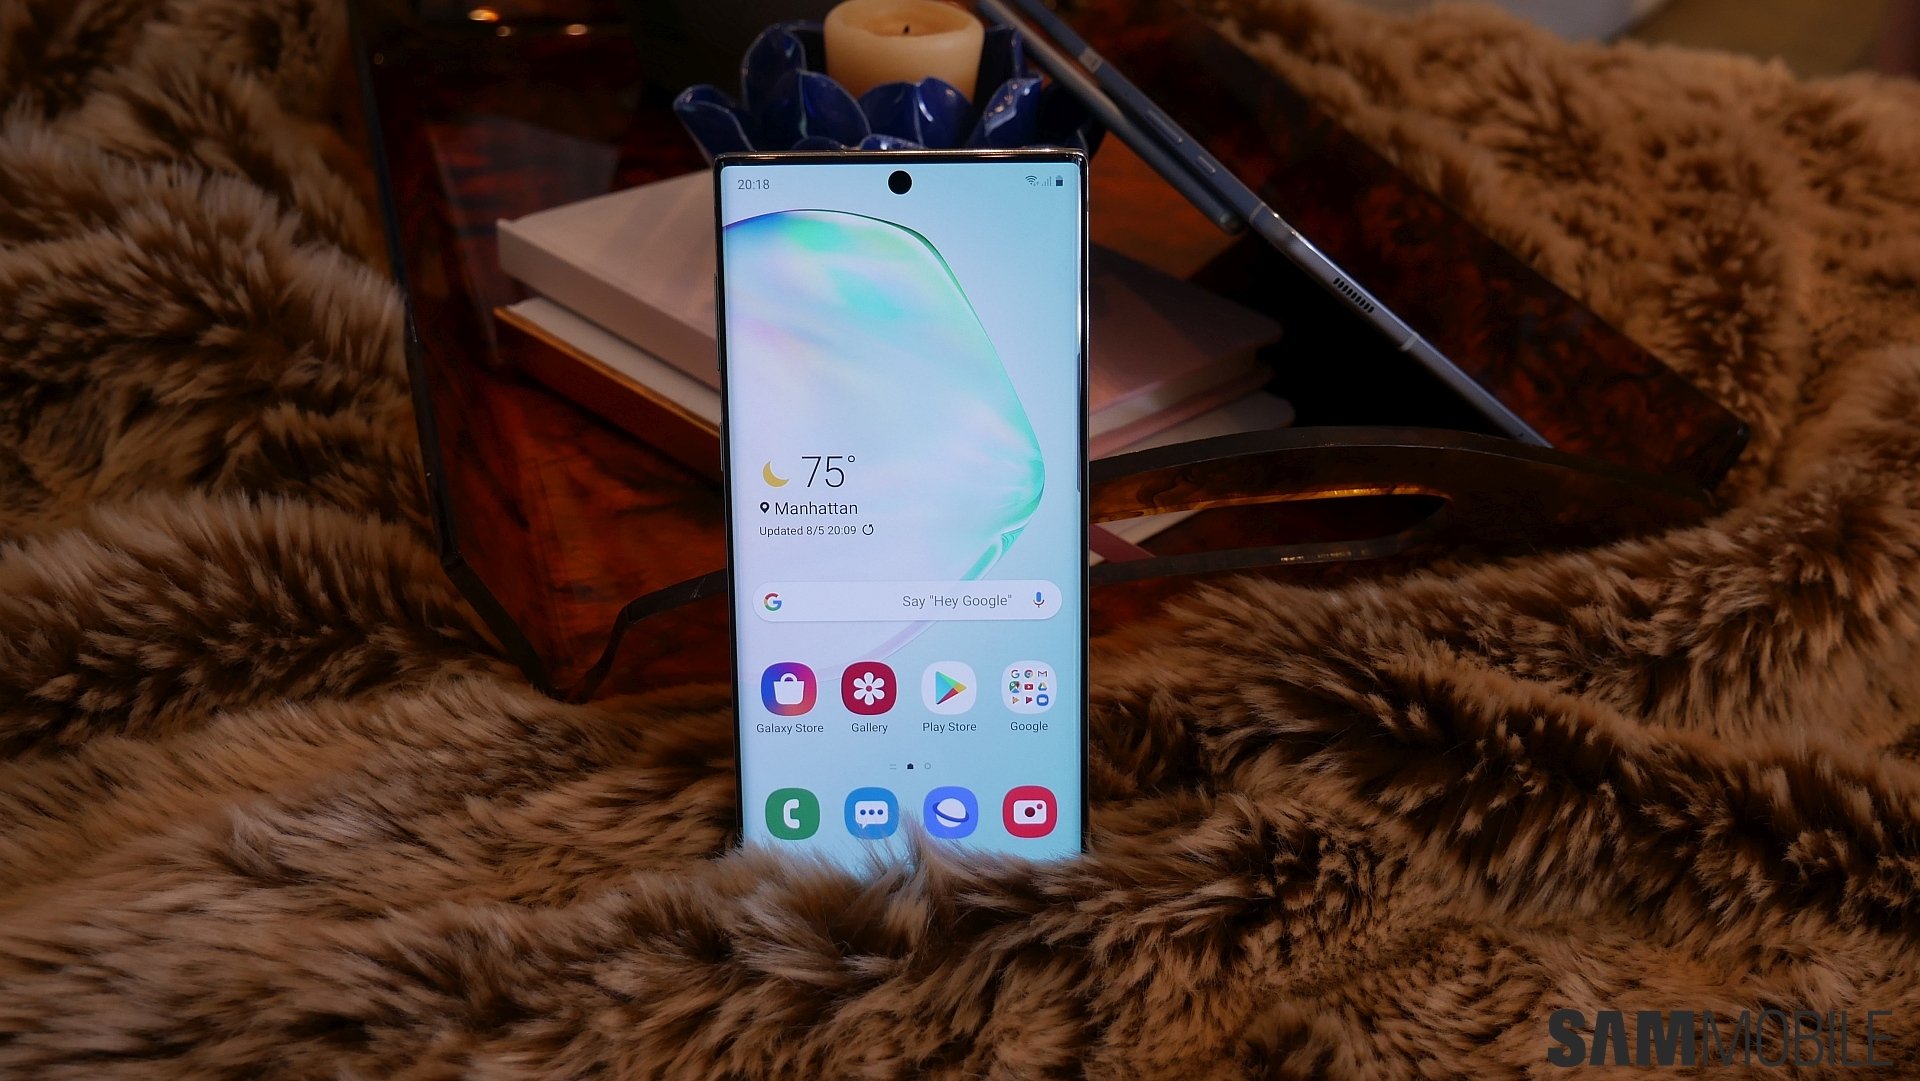 Tải ngay hình nền độc đáo cho thiết bị Samsung Galaxy Note 10 của bạn và làm mới giao diện điện thoại với những thiết kế độc đáo và đẹp mắt.